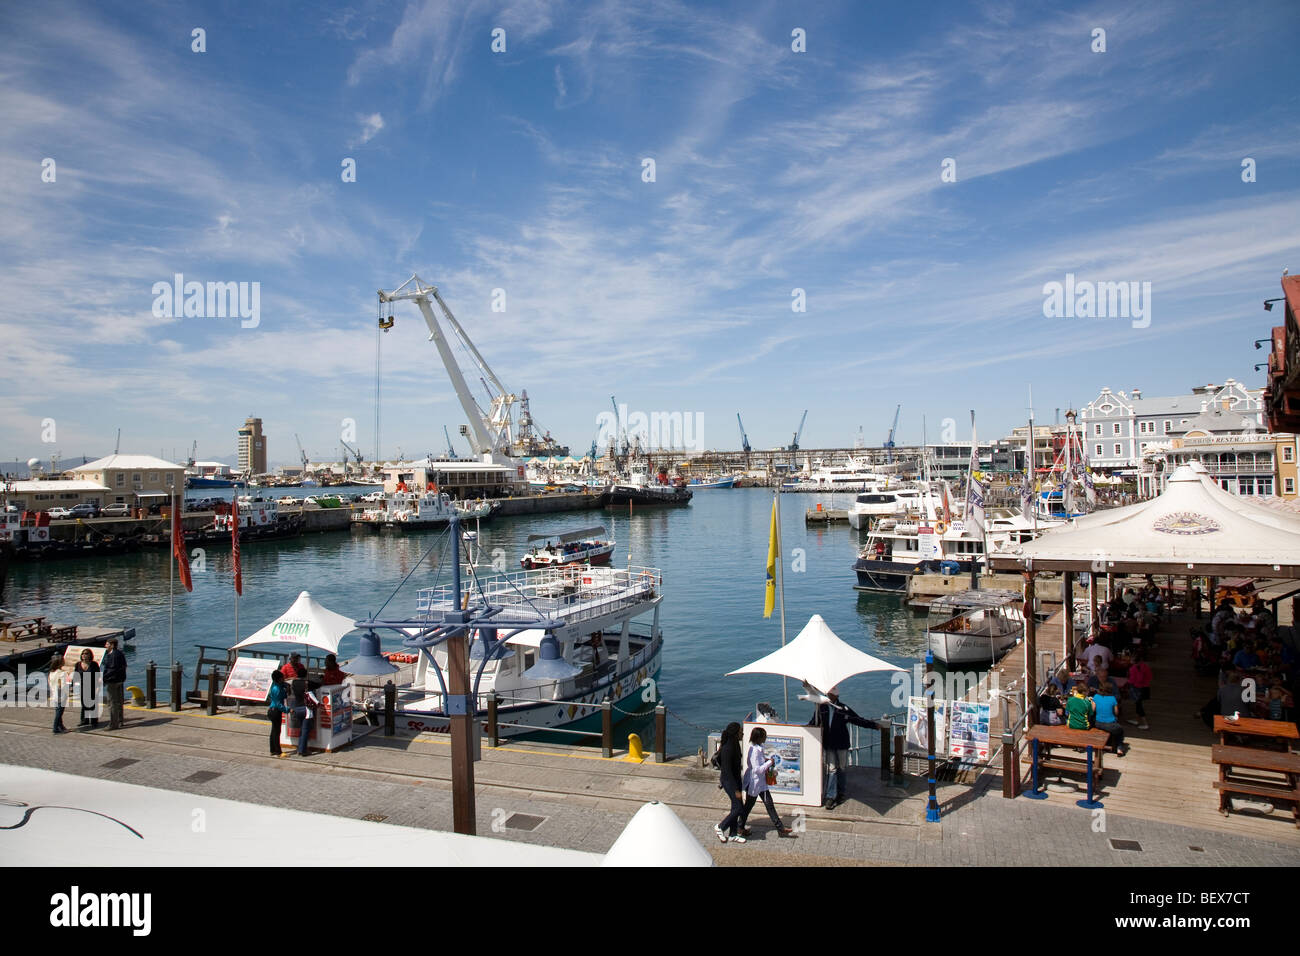 Fisherman's Wharf et des bateaux touristiques à waterfront Docks Banque D'Images